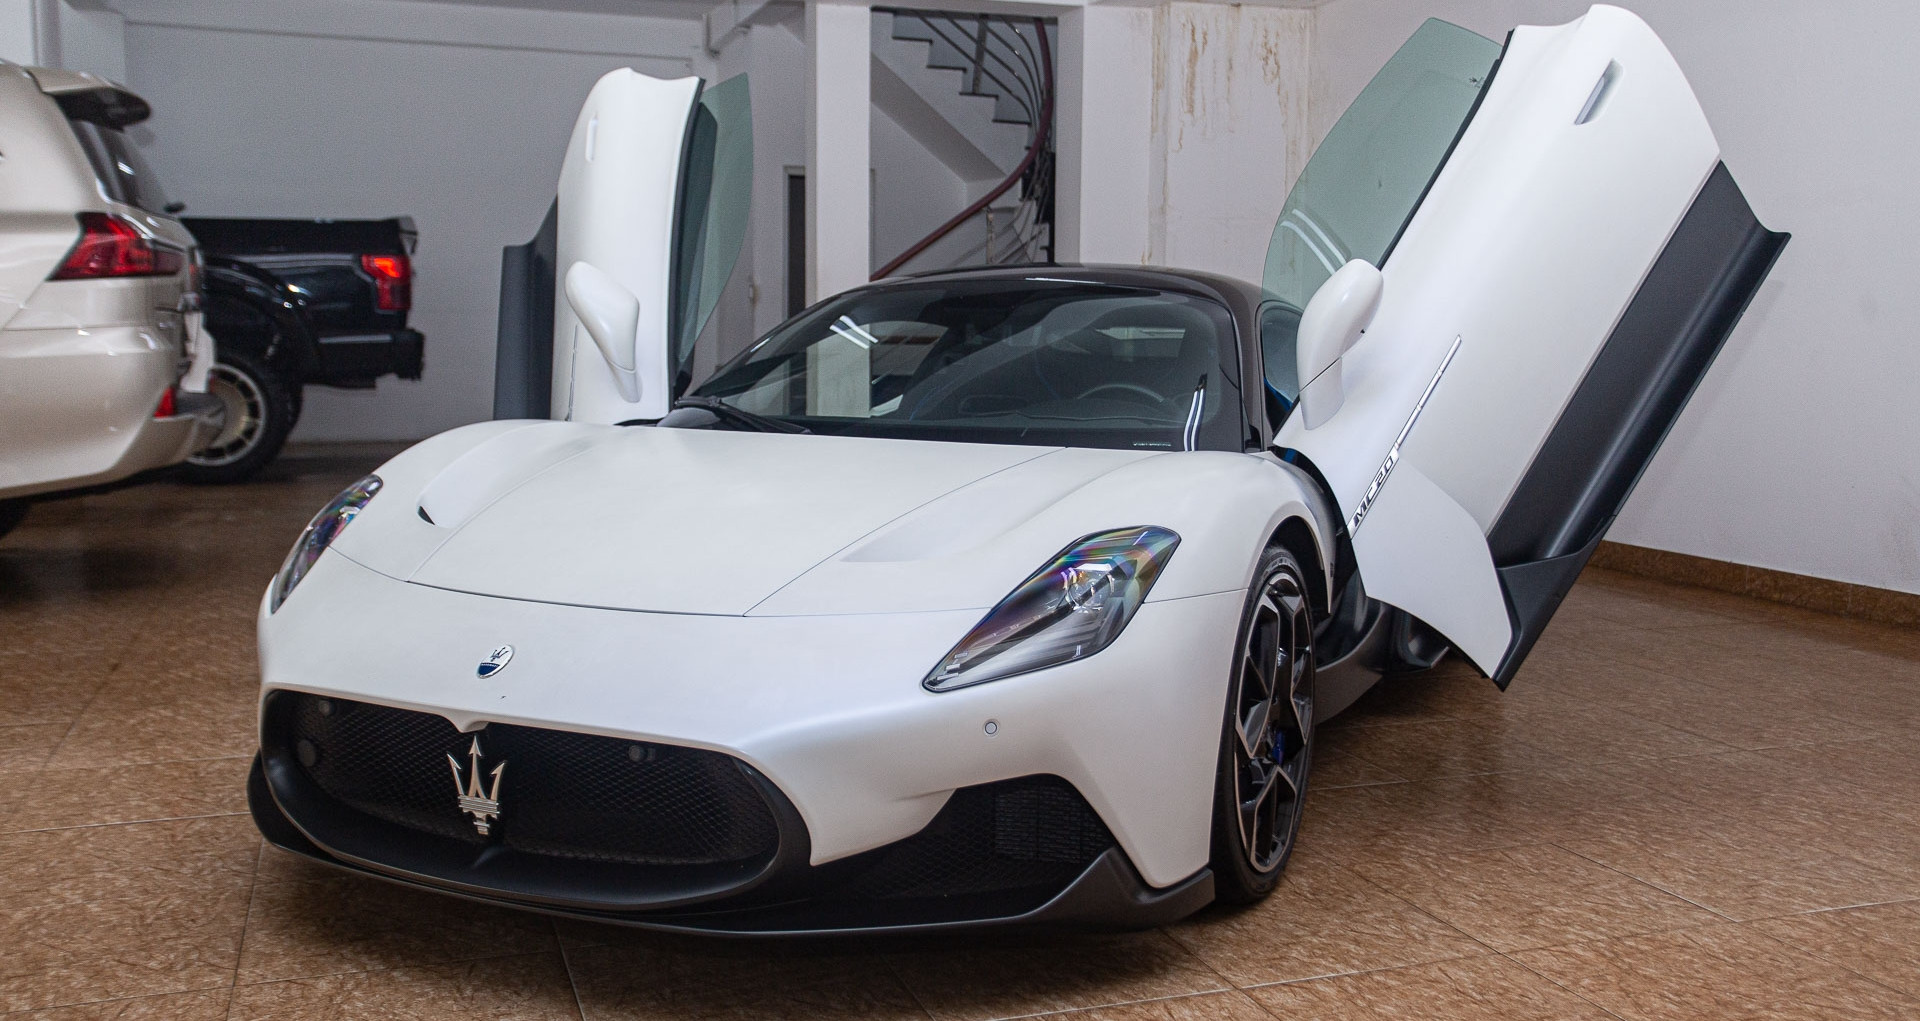 View - Giá xe Maserati MC20 nhập tư hạ gần 3 tỷ dù chưa ra biển số